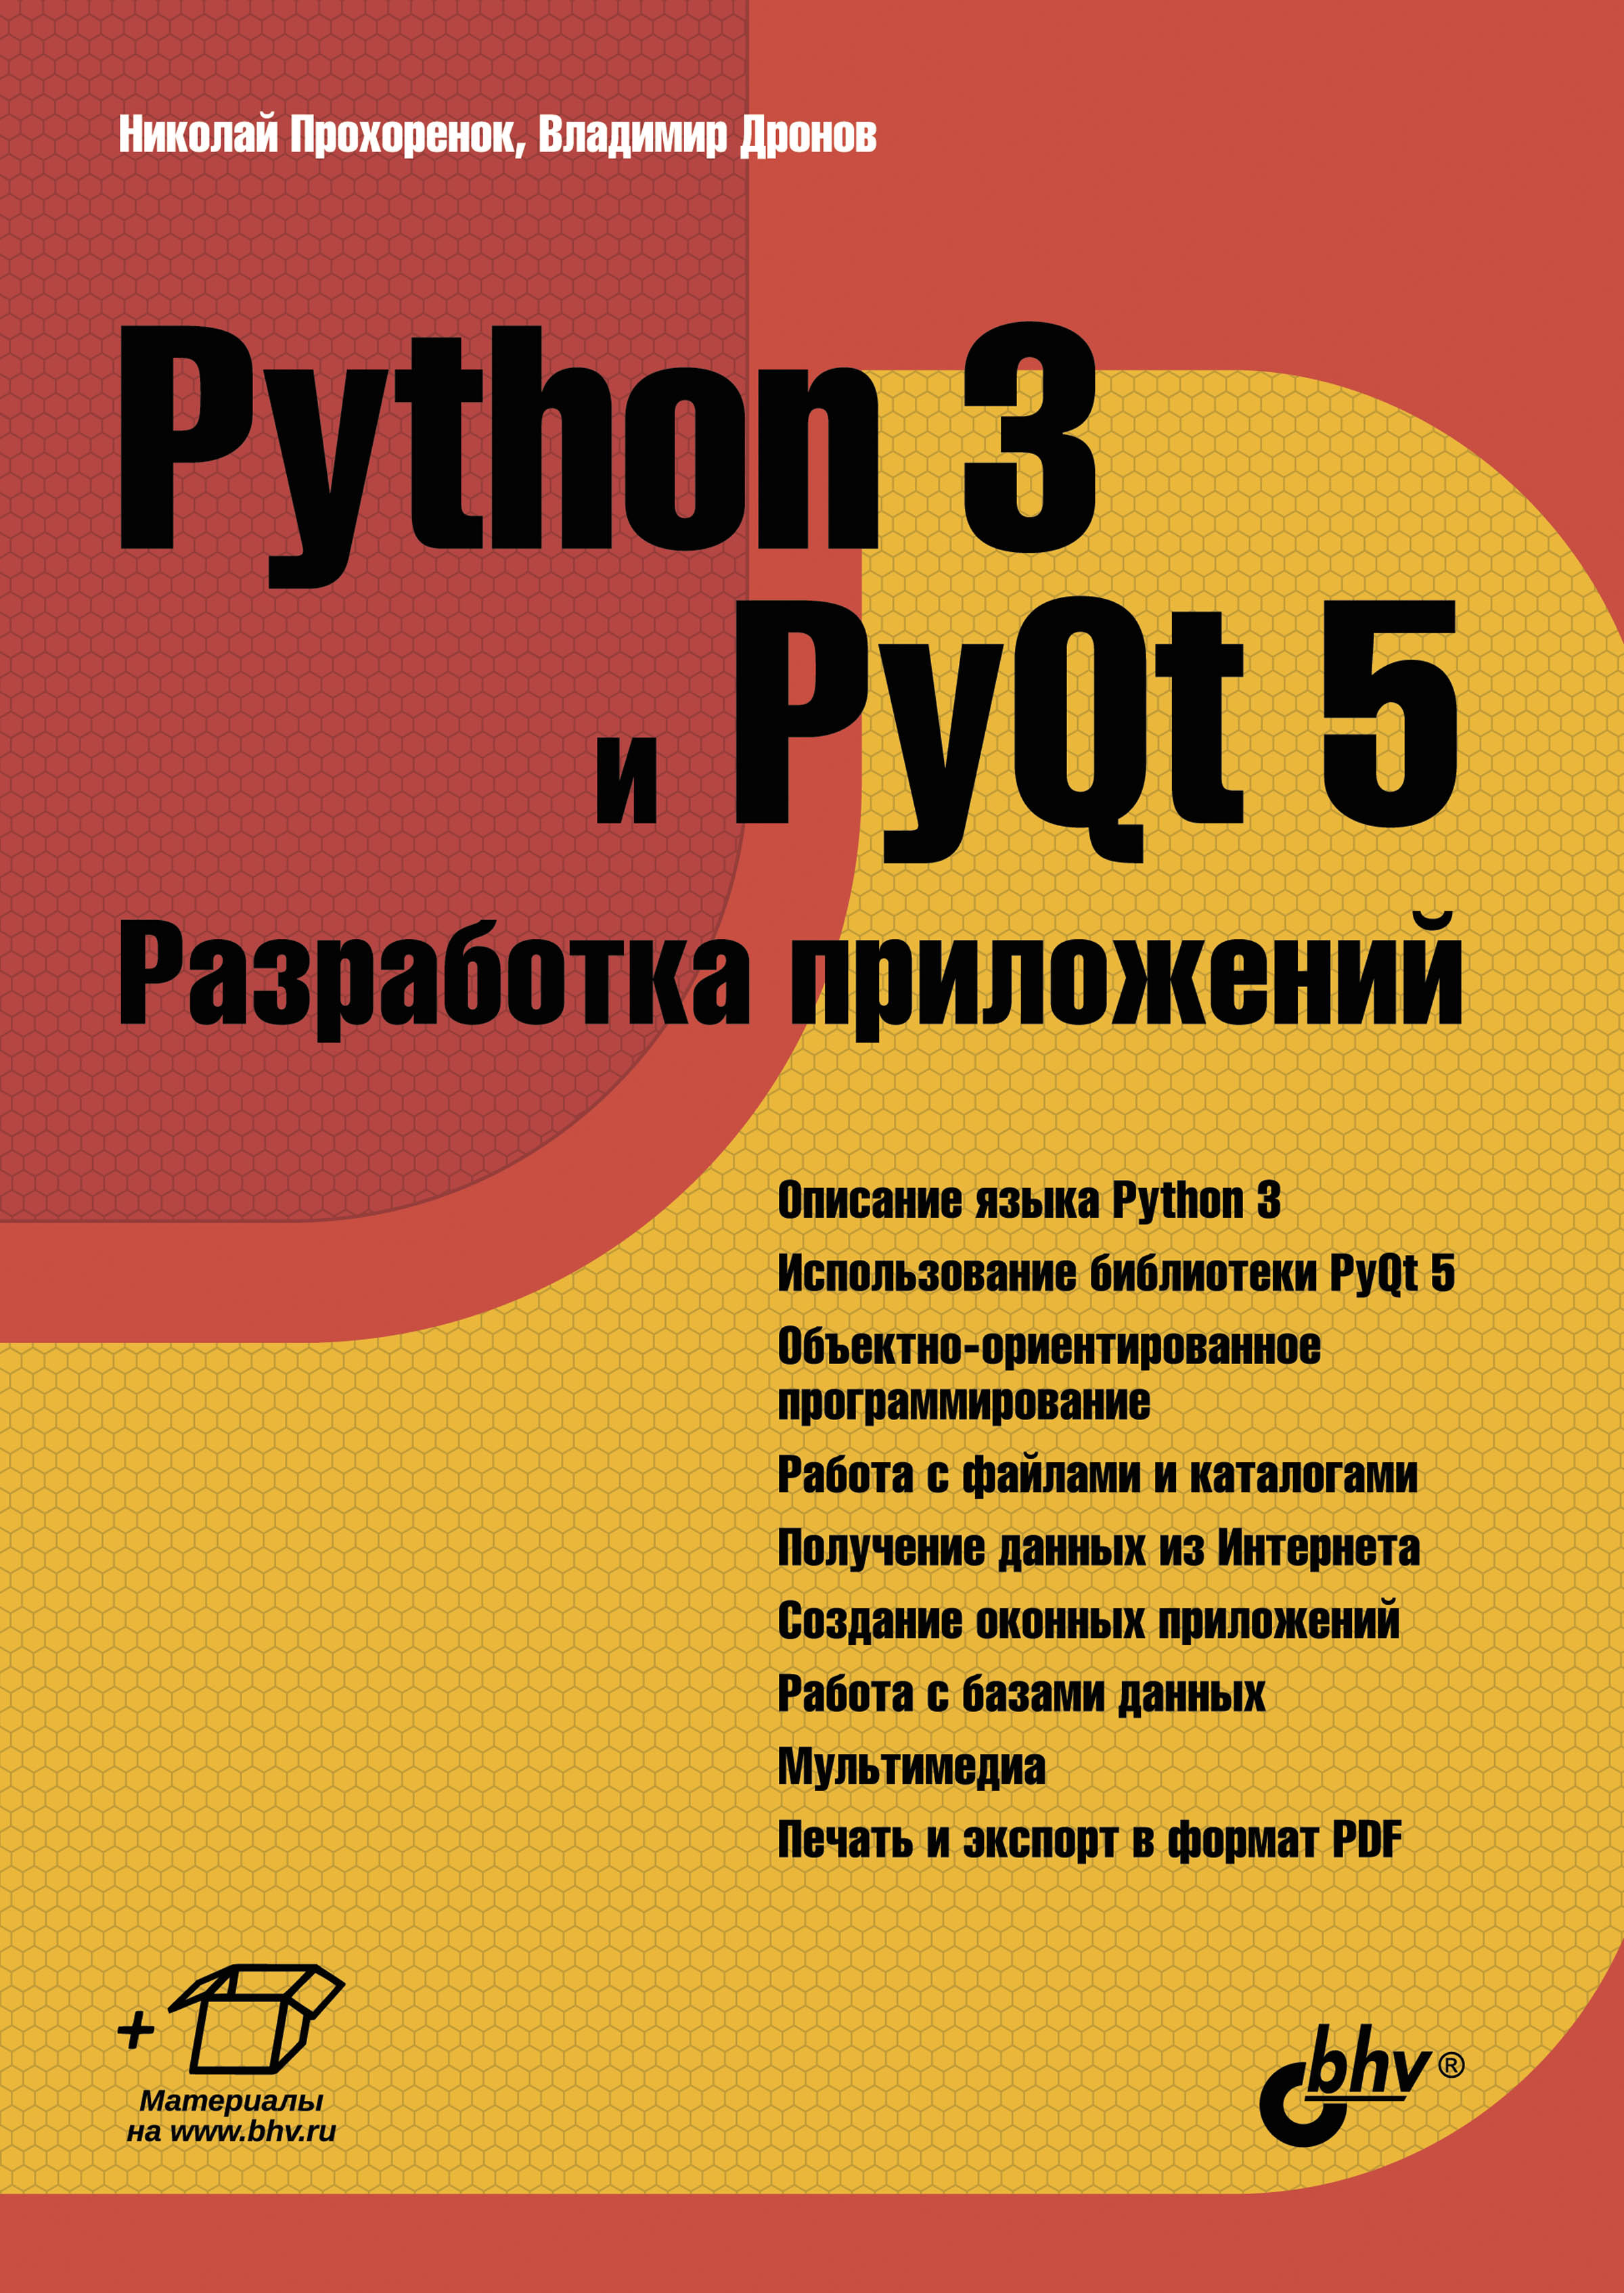 Книга  Python 3 и PyQt 5. Разработка приложений созданная Владимир Дронов, Николай Прохоренок может относится к жанру базы данных, программирование, руководства, техническая литература. Стоимость электронной книги Python 3 и PyQt 5. Разработка приложений с идентификатором 5582586 составляет 620.00 руб.